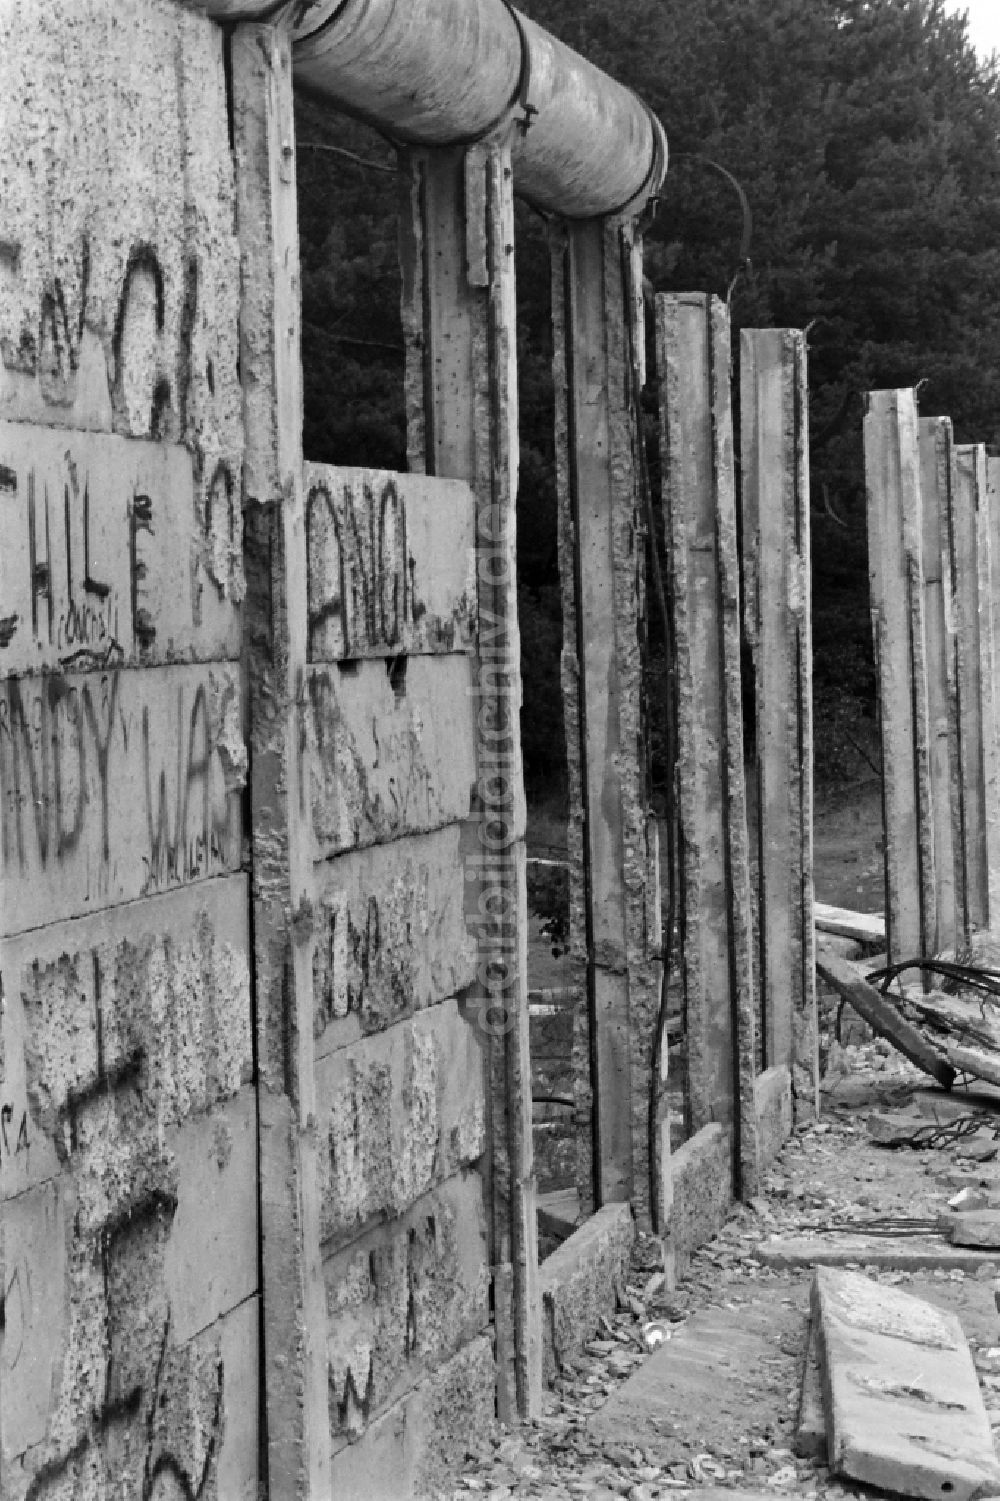 DDR-Bildarchiv: Berlin - Fragmente der verfallenden Grenzbefestigung und Mauer in Berlin in der DDR